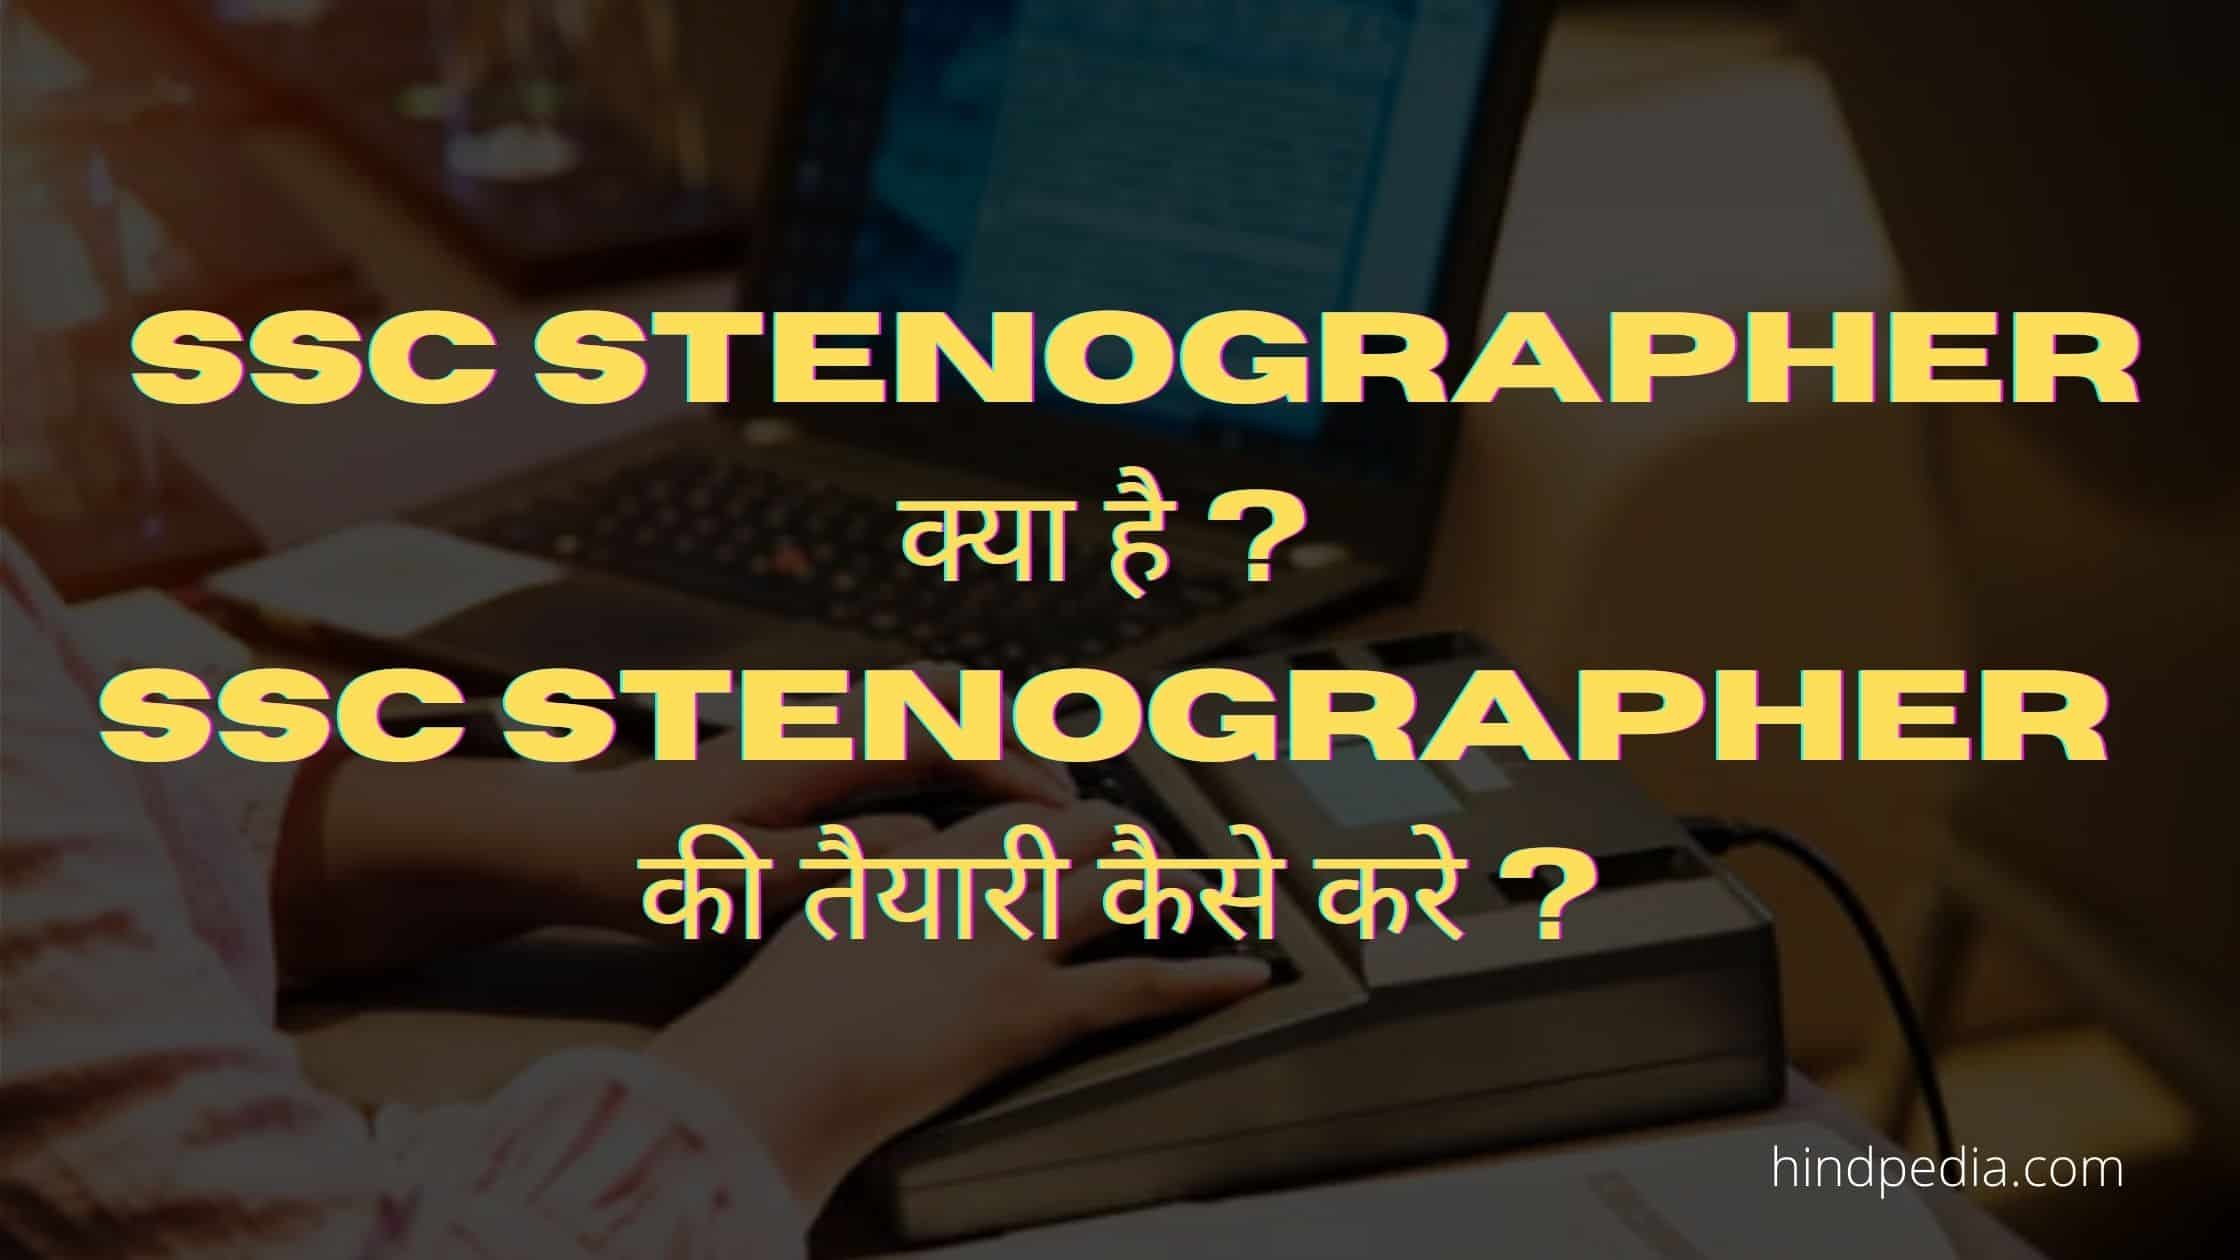 SSC Stenographer क्या है ? SSC Stenographer की तैयारी कैसे करे ?